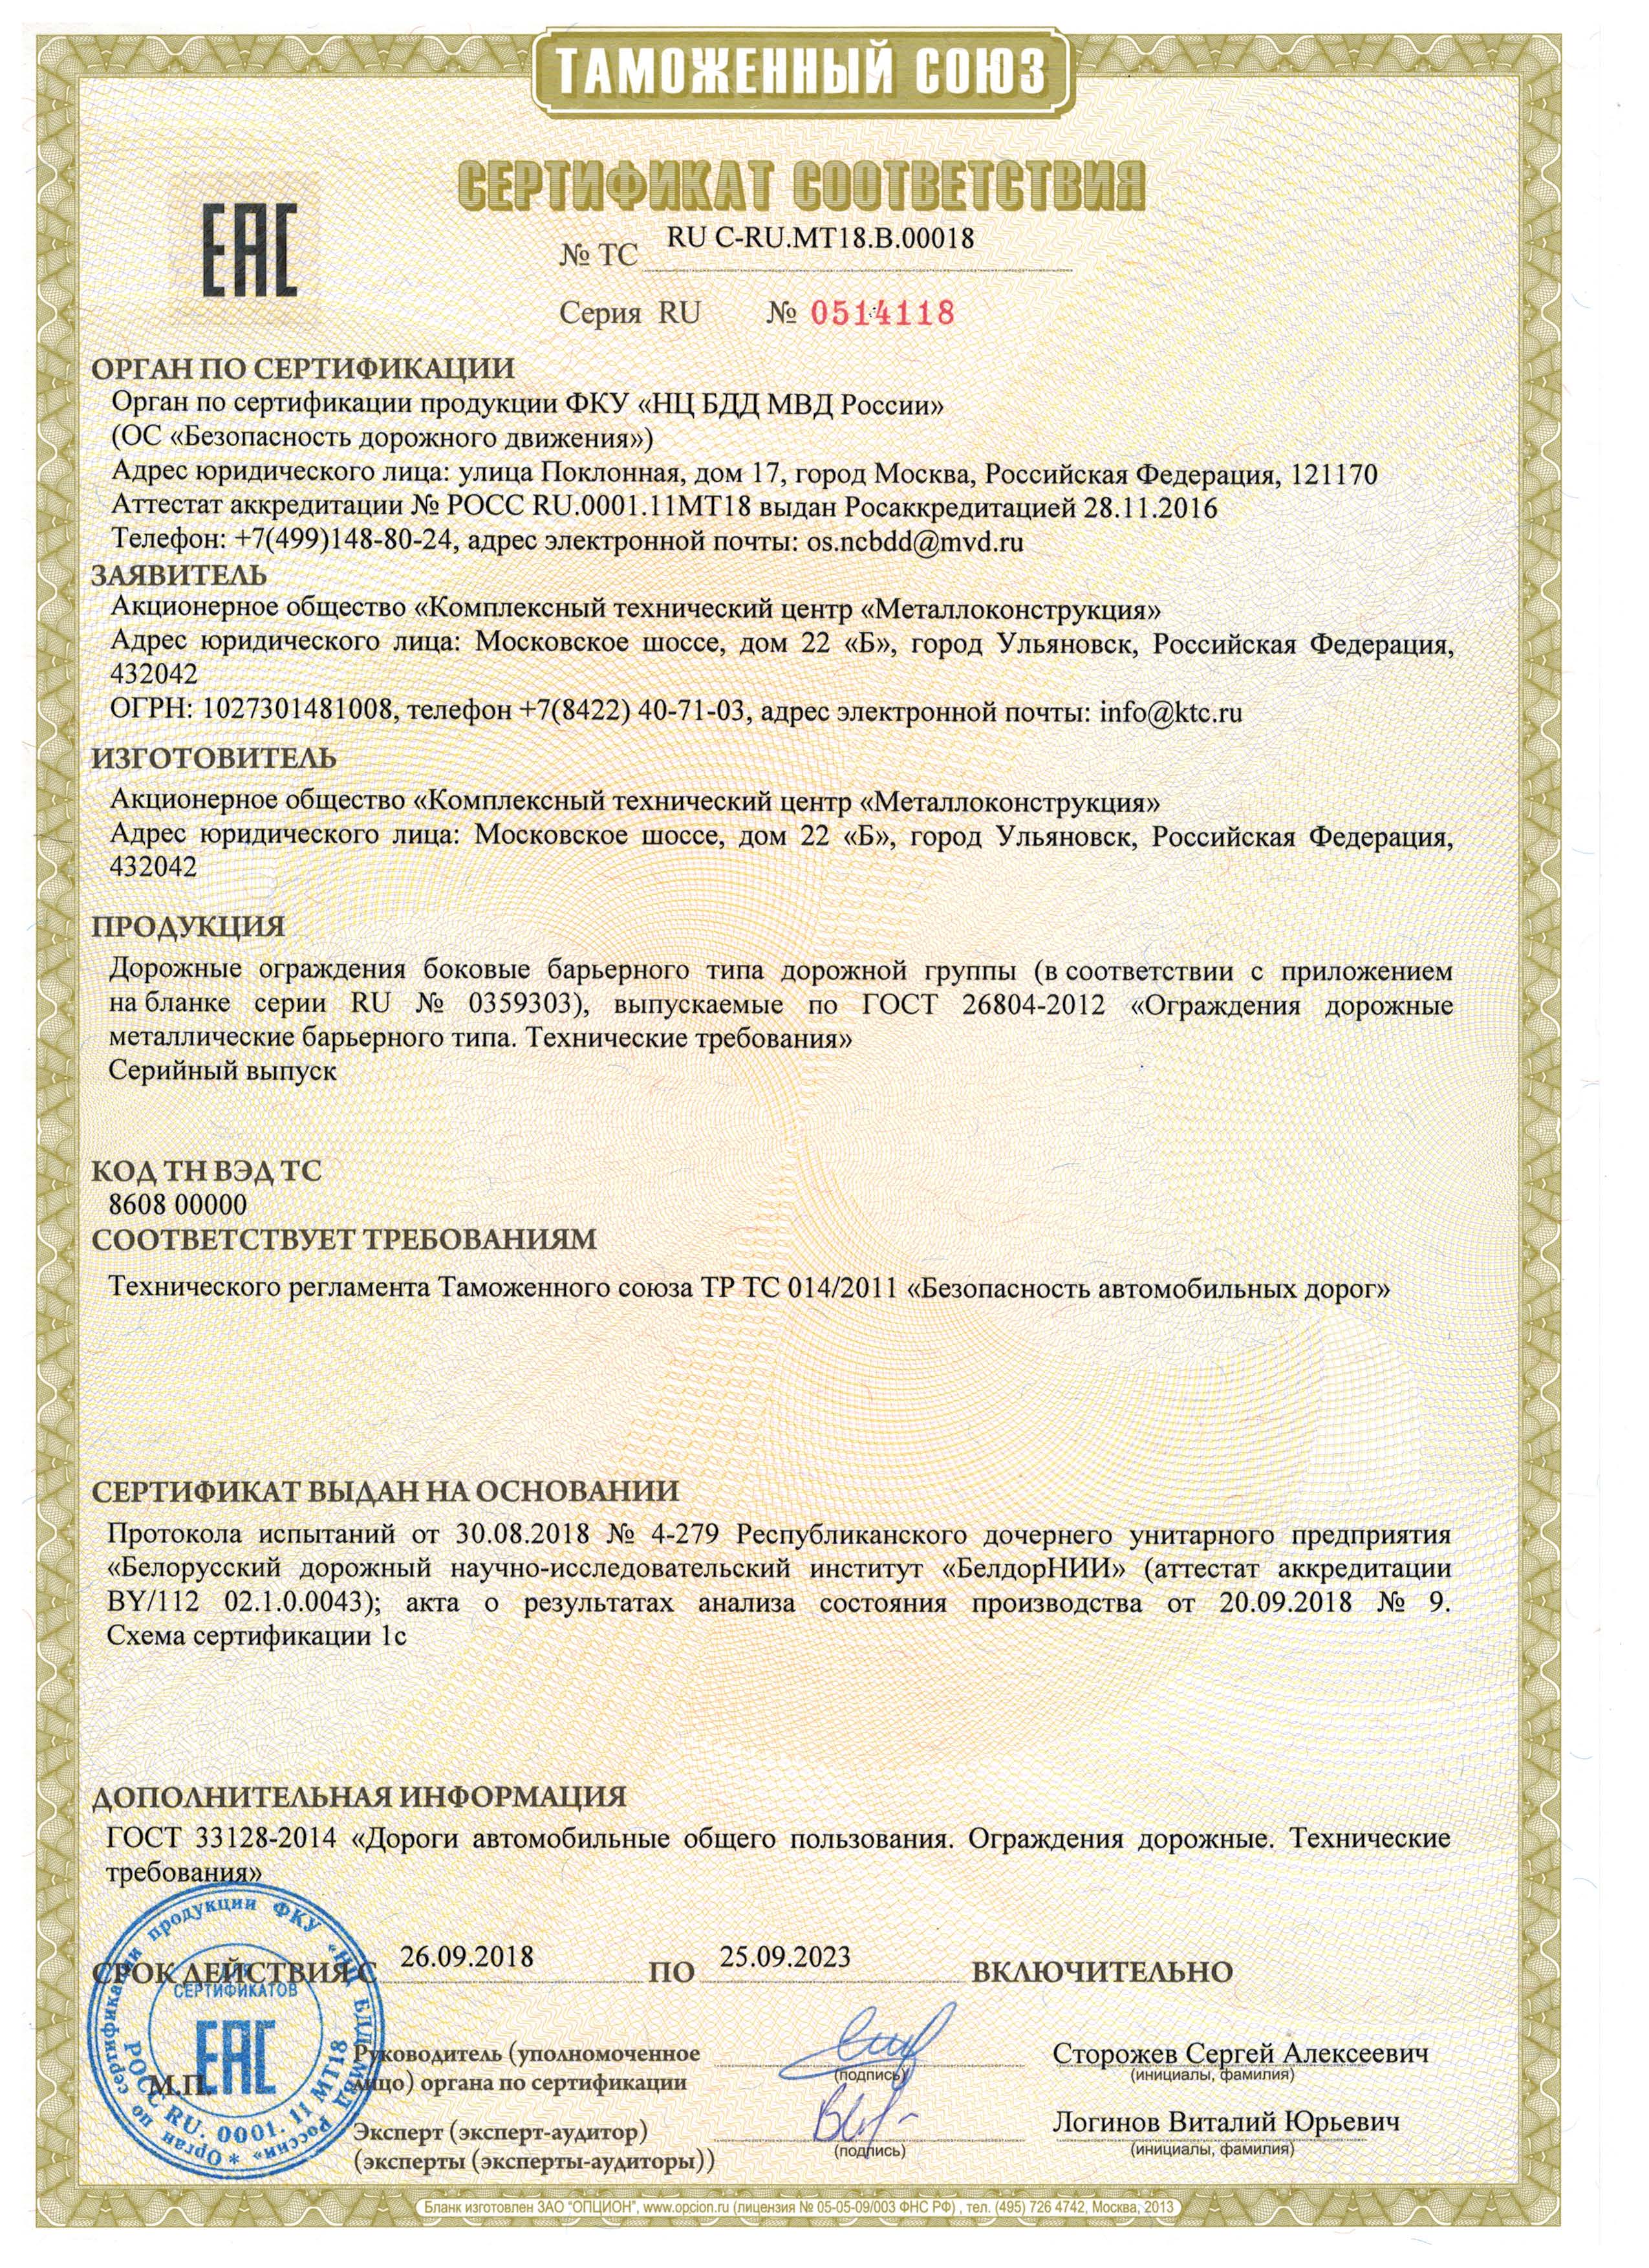 Сертификат на соответствие ГОСТ 26804 по ТР ТС на ДО